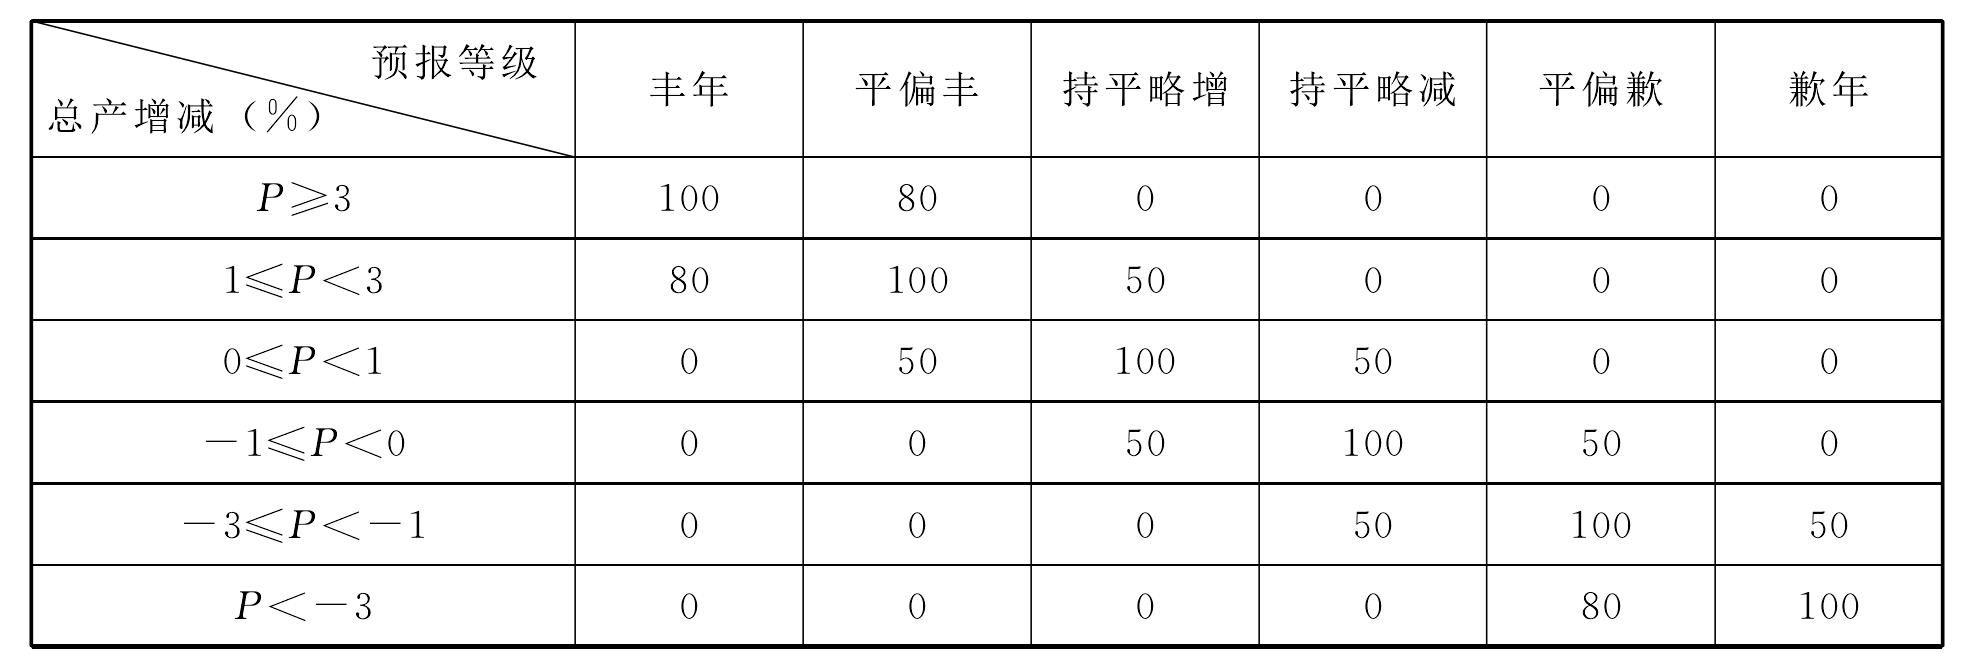 四川省农业气象产量预报业务质量考核办法